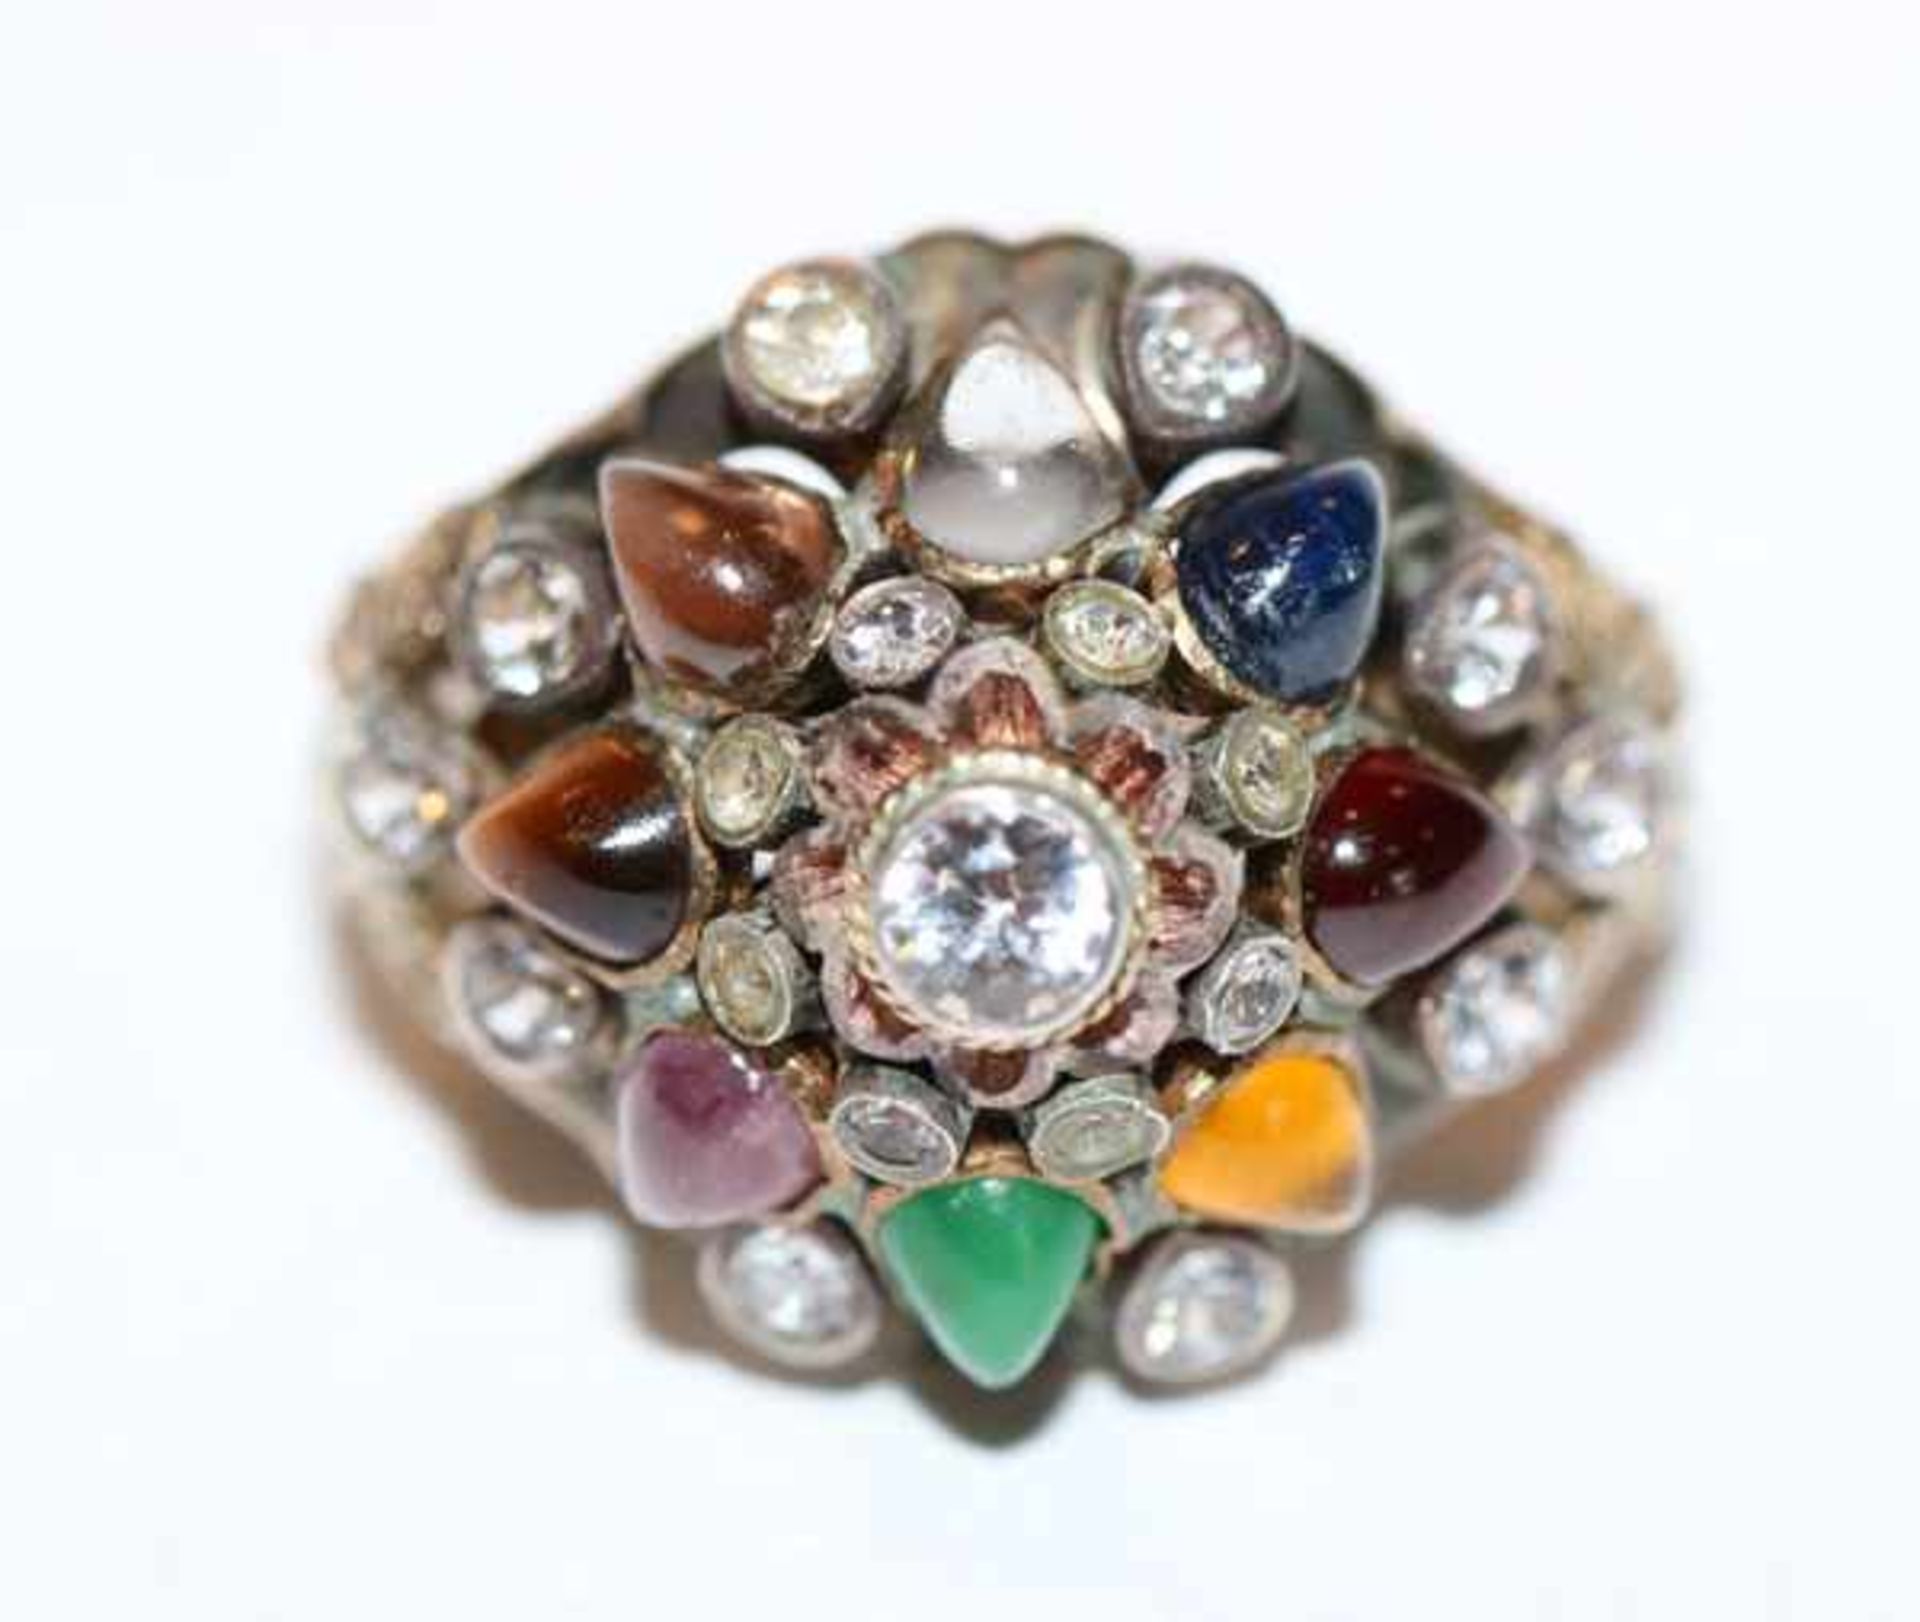 Dekorativer Ring, vergoldet, teils Silber mit Farb- und Glassteinen besetzt, ausgefallene